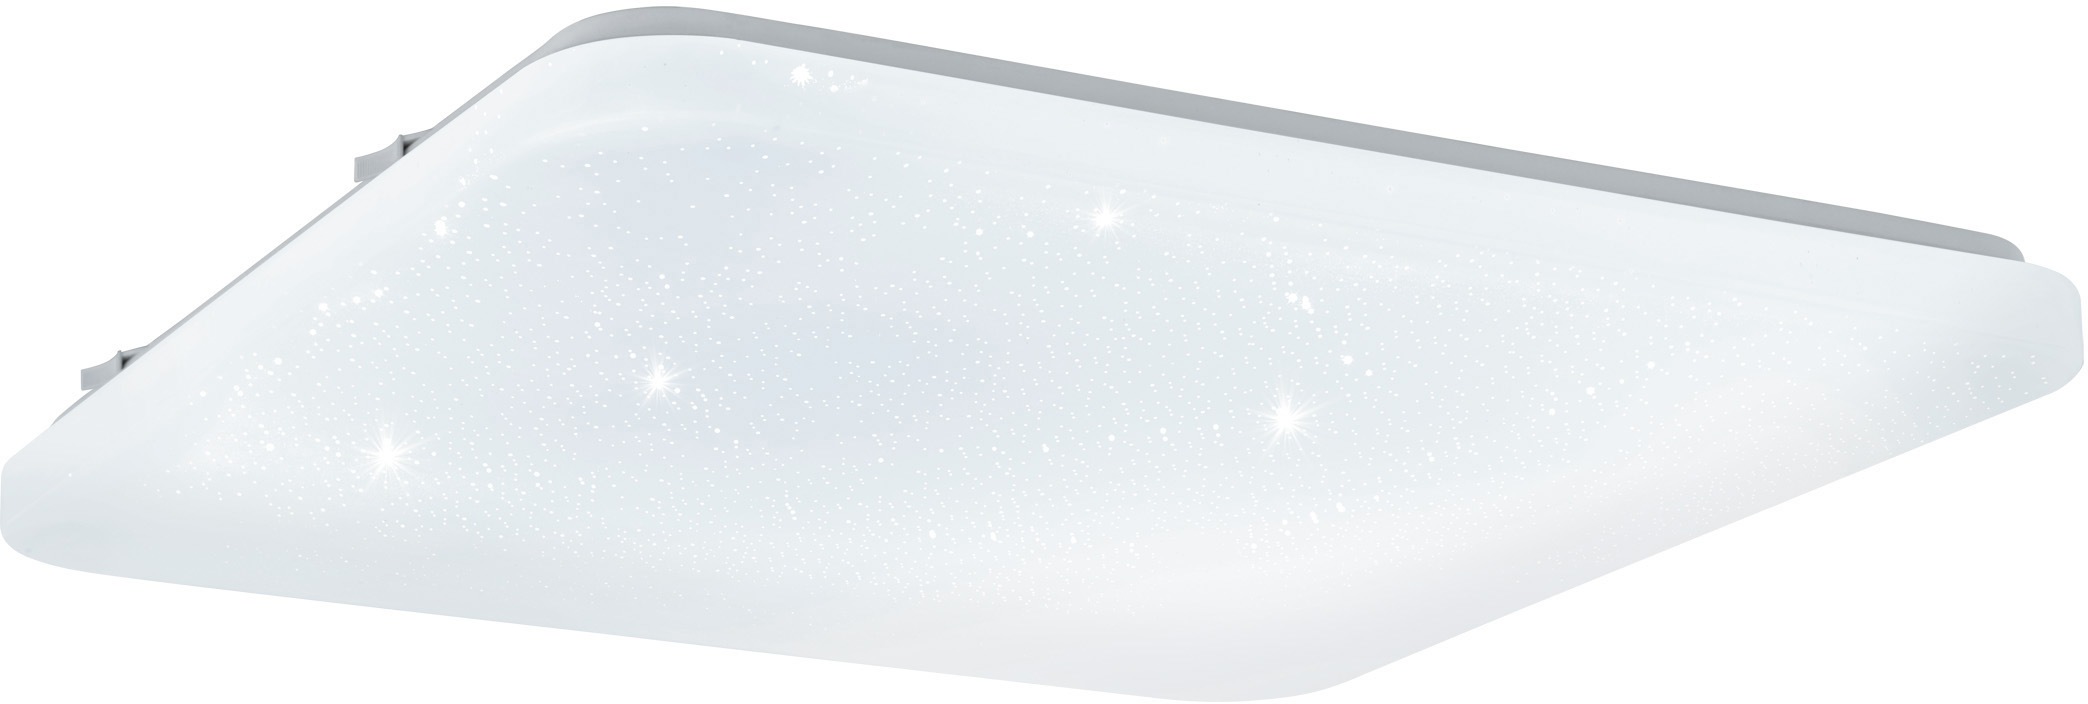 EGLO LED Deckenleuchte FRANIA-S, LED-Board, Warmweiß, weiß / L43 x H7 x B33 cm / inkl. 1 x LED-Platine (je 33W, 3600lm, 3000K) / Deckenlampe - Sternenhimmel - Lampe - Schlafzimmerlampe - Kinderzimmerlampe - Kinderzimmer - Schlafzimmer